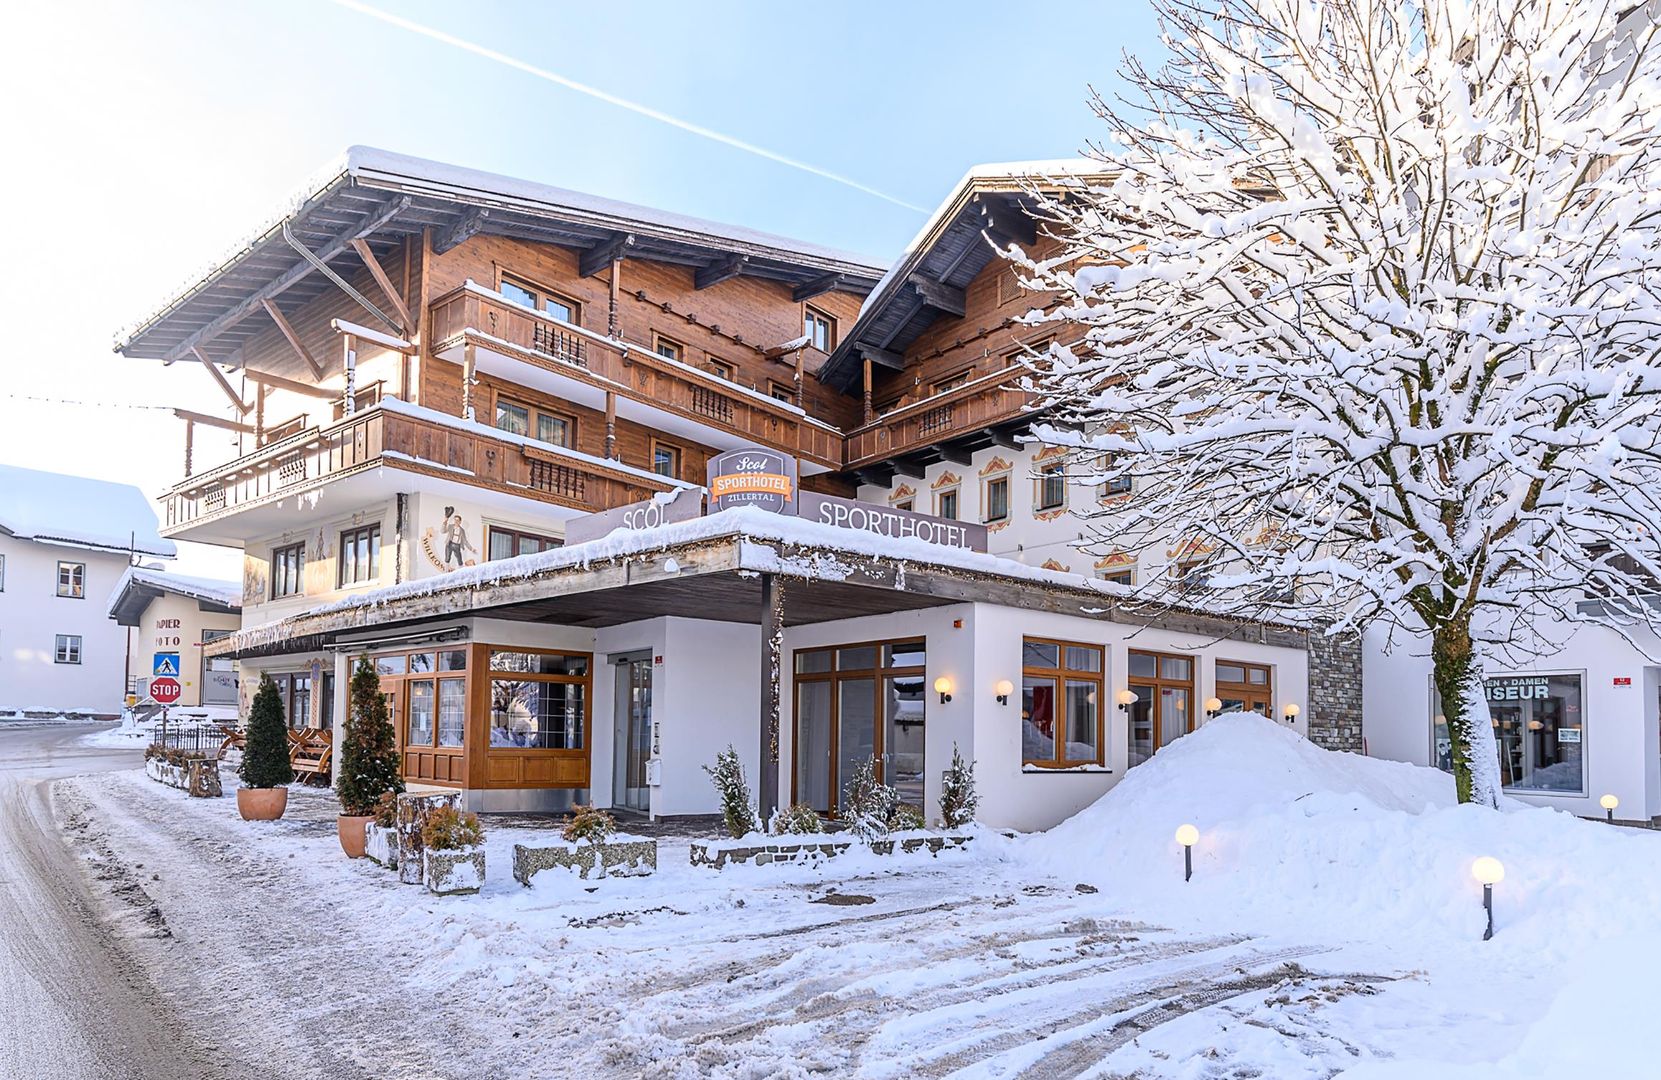 Meer info over SCOL Sporthotel Zillertal  bij Wintertrex